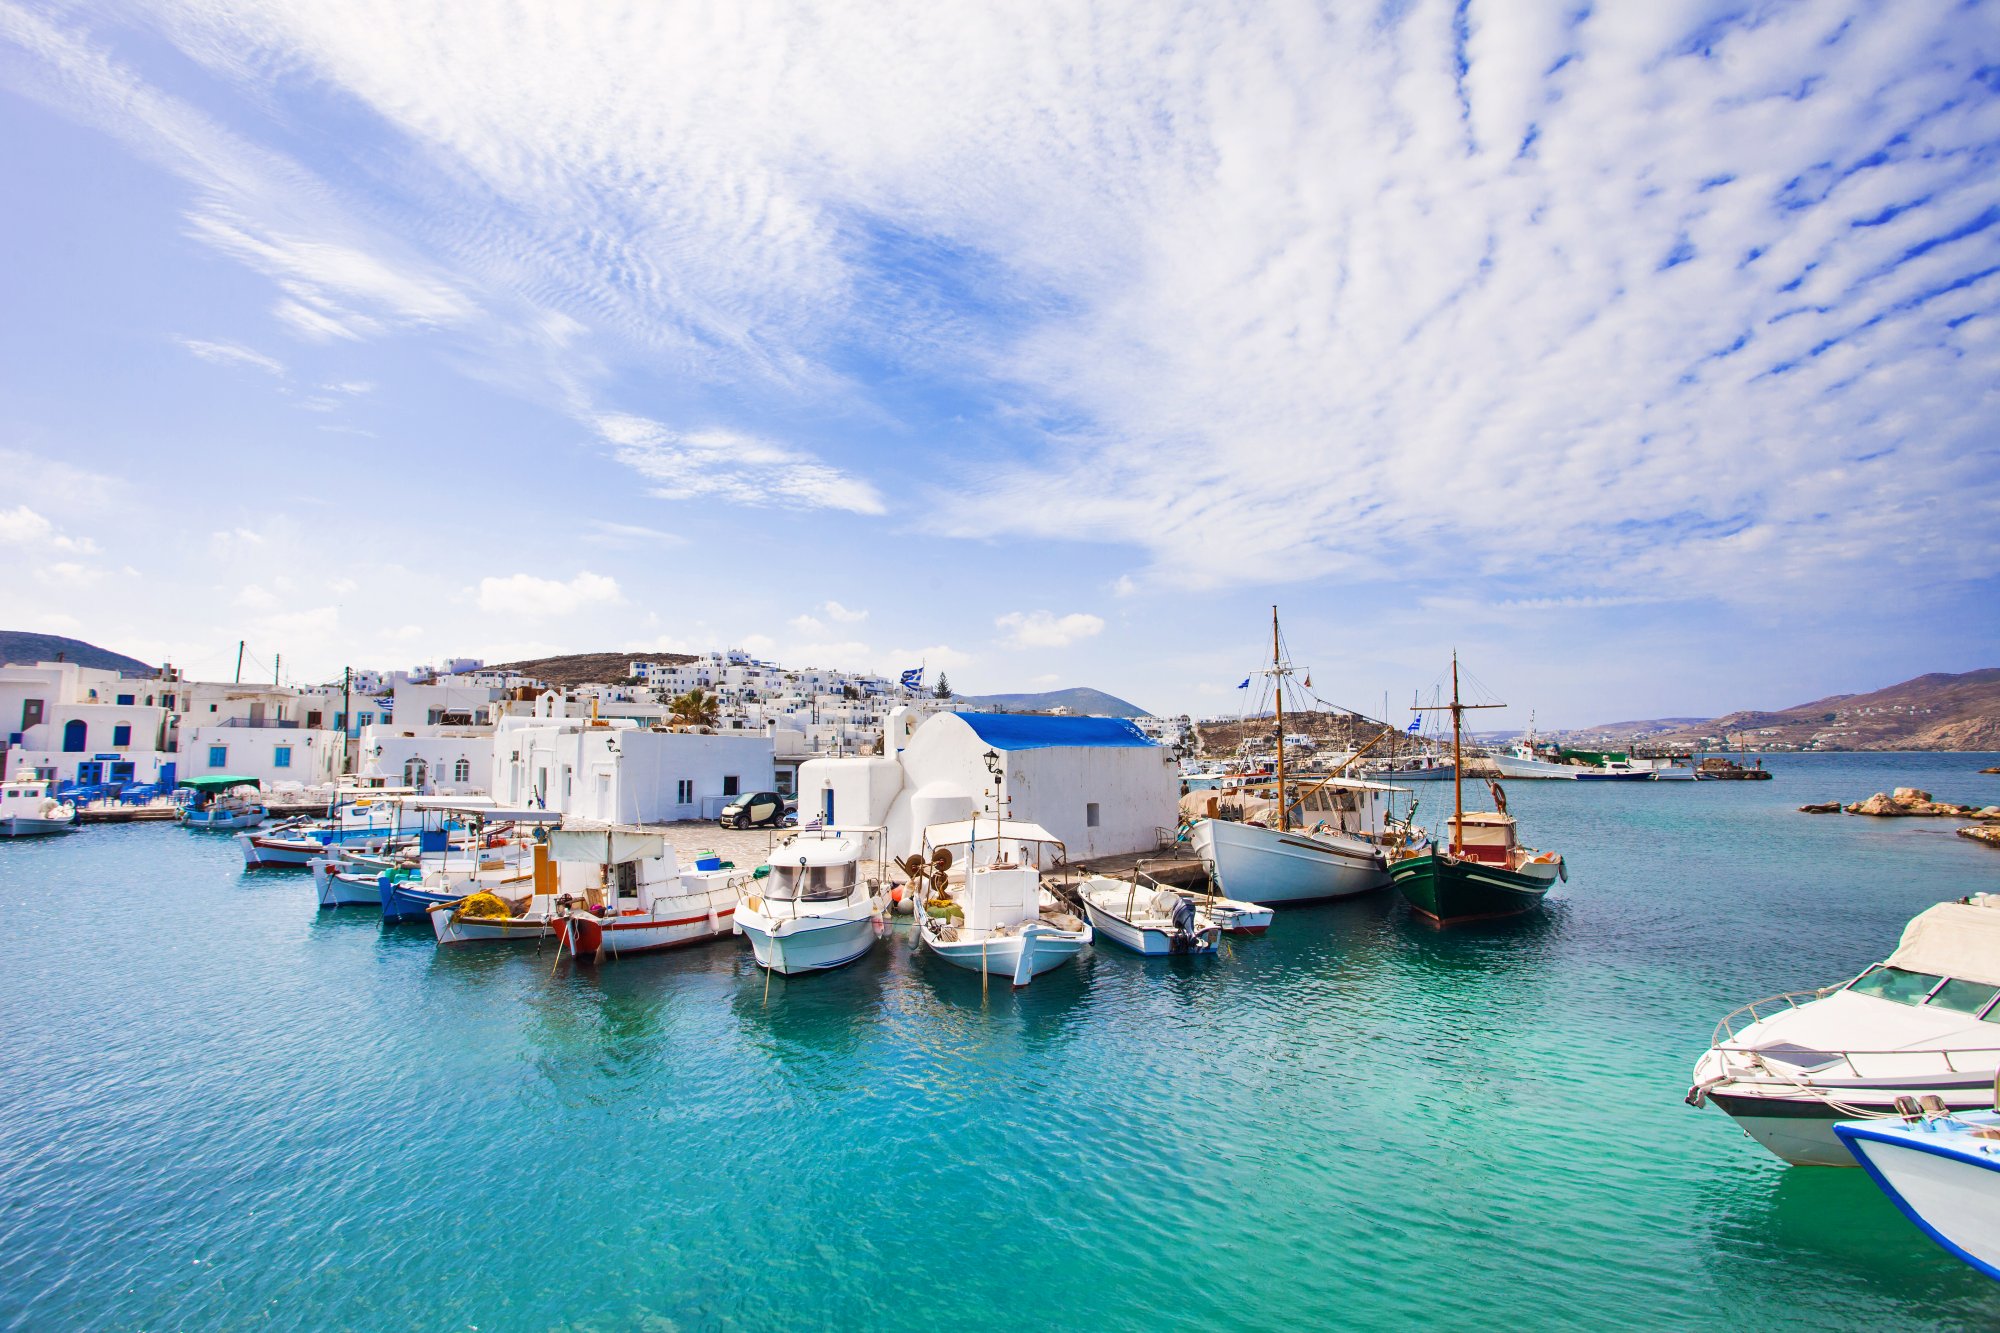 Τα 4 ελληνικά νησιά που προτείνουν οι Αυστραλοί για διακοπές - Δεν είναι τα γνωστά